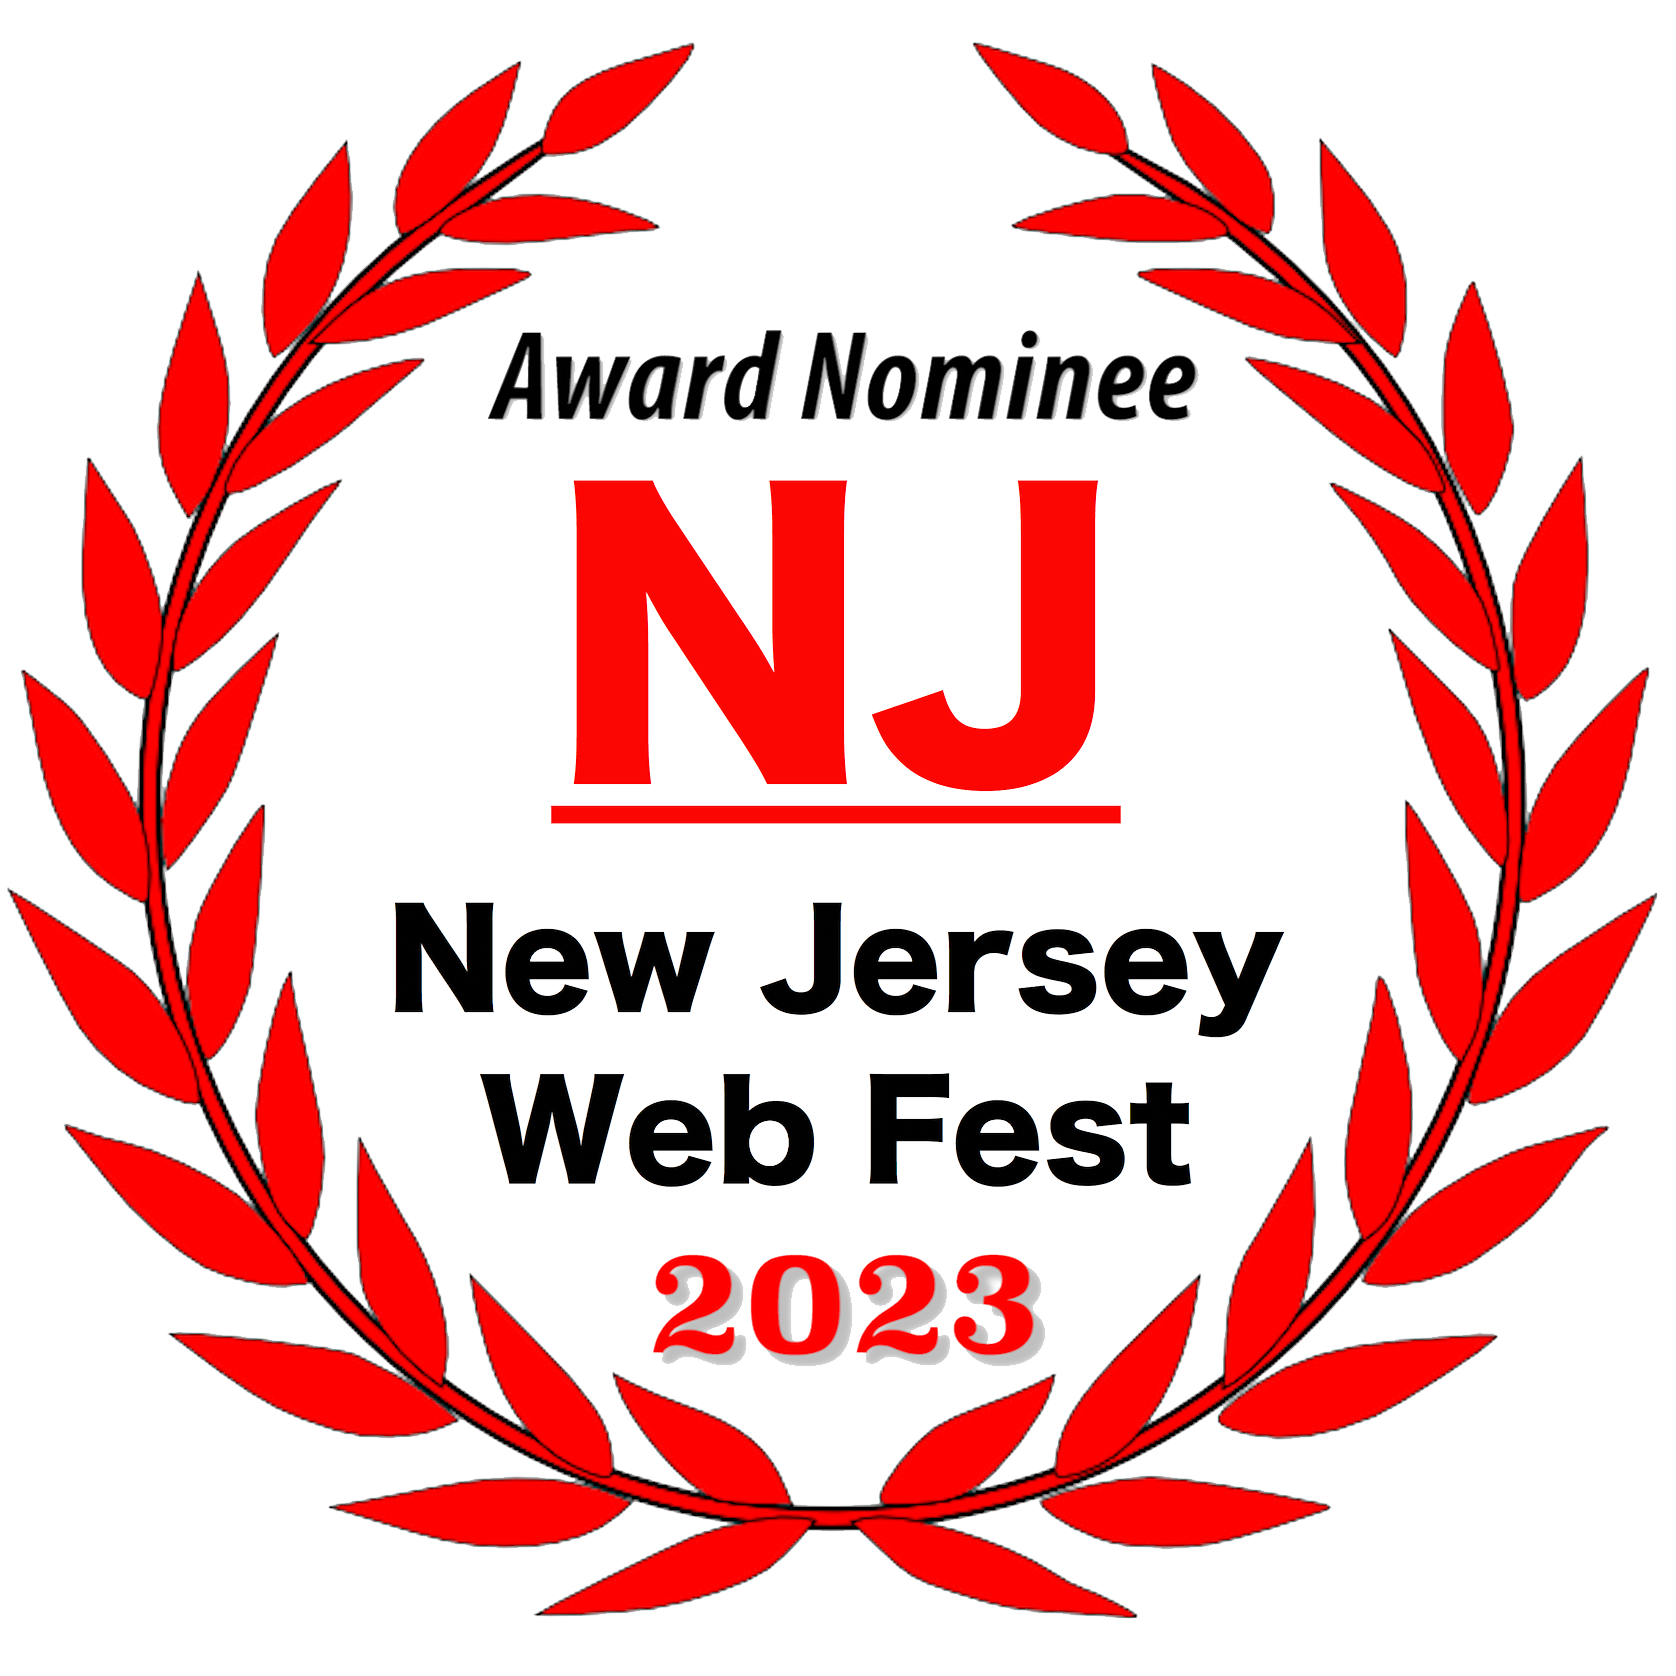 Award Nominee - New Jersey Web Fest 2023